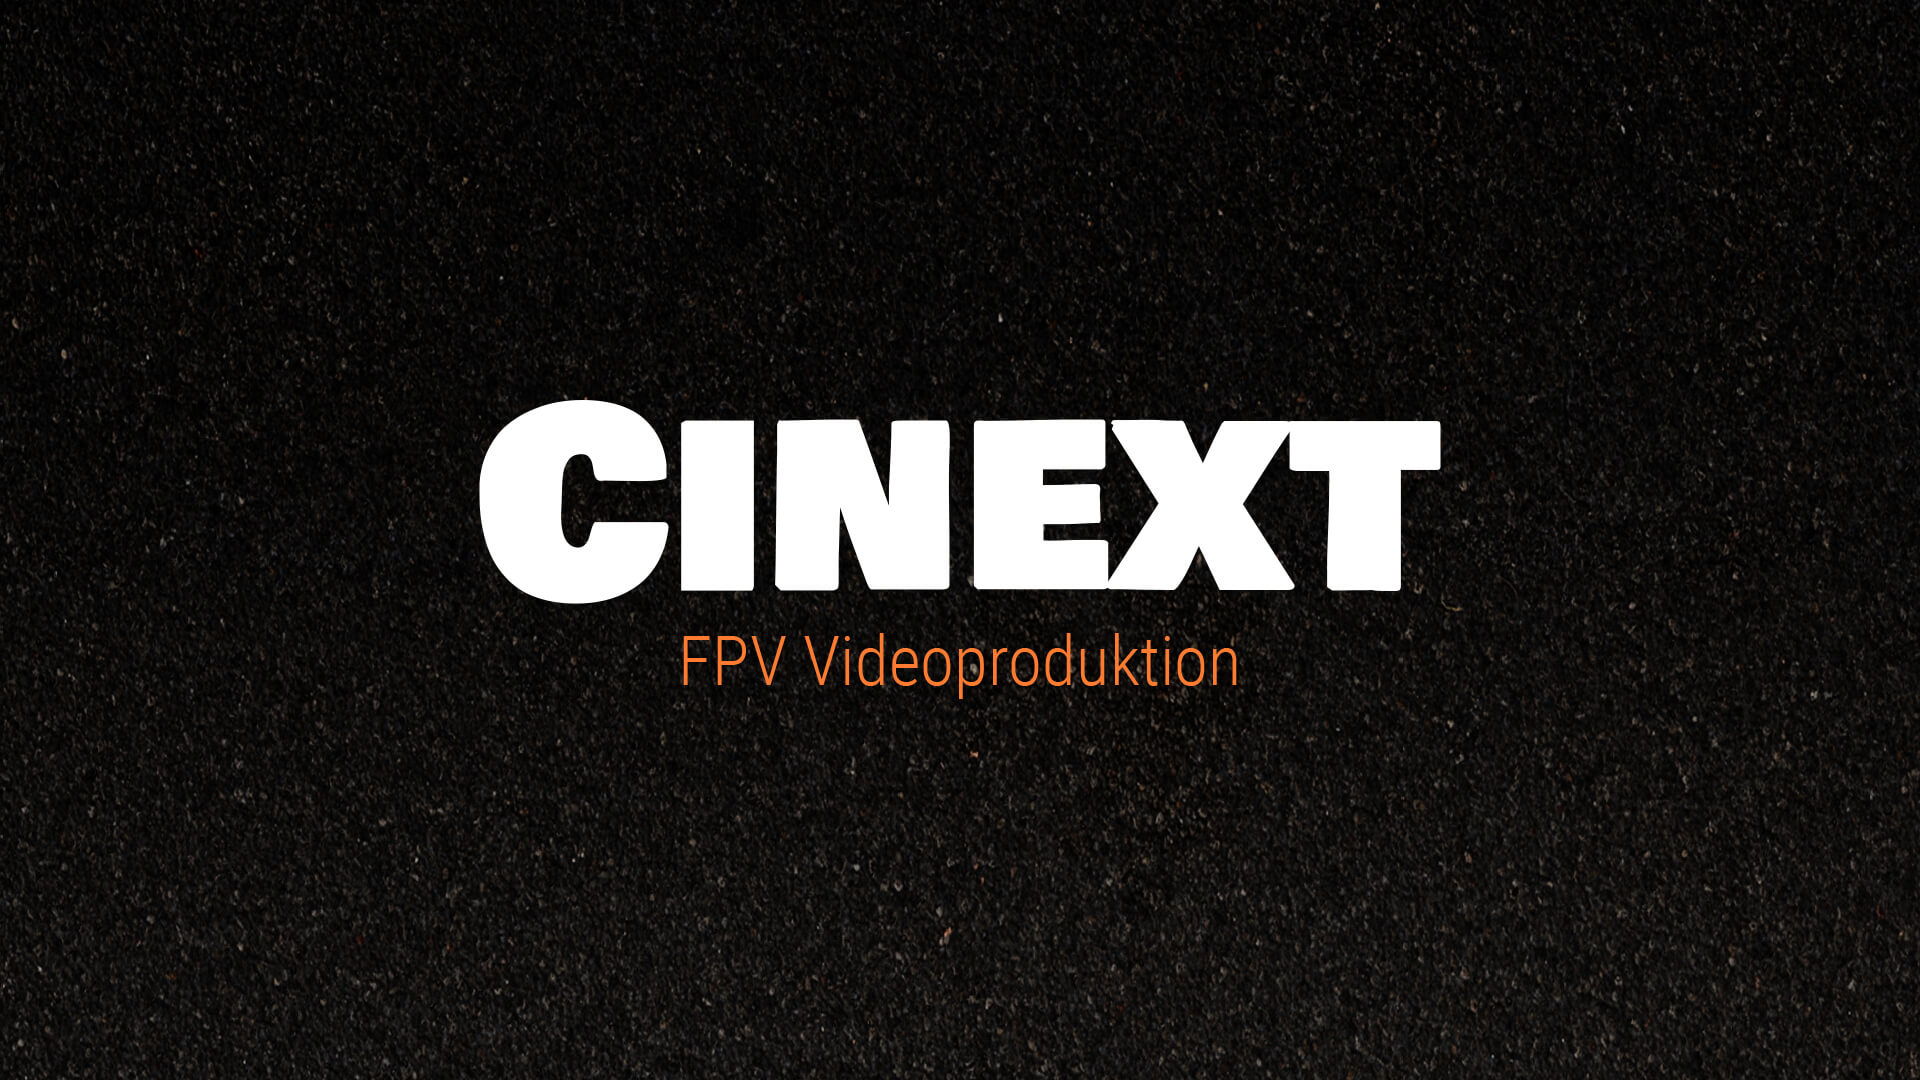 Neu bei FPV24: FPV Videoproduktion für Film und Fernsehen!